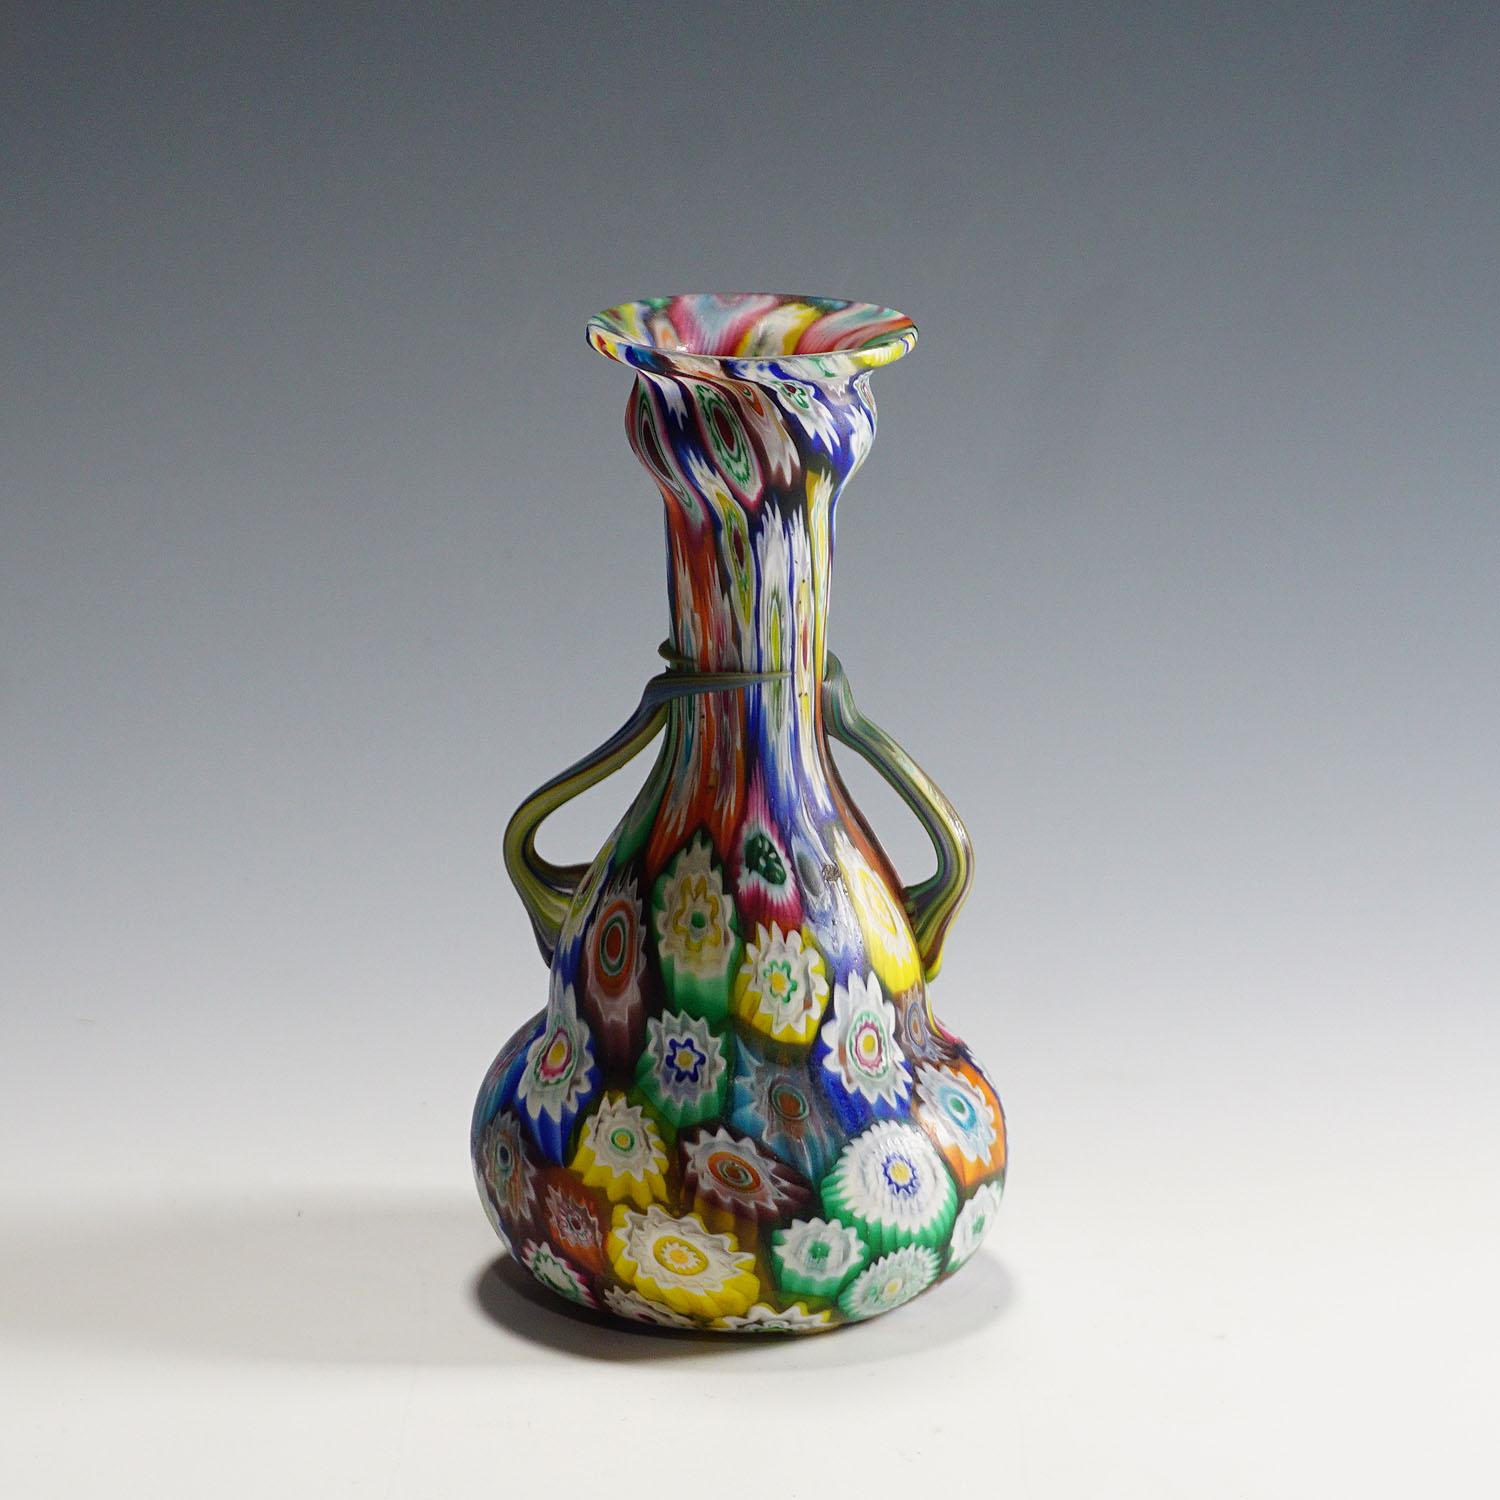 Eine sehr schöne murrine Glasvase, hergestellt von Vetreria Fratelli Toso Anfang des 20. Die Vase ist mit polychromen, mehrfarbigen Millefiori-Murrinen ausgeführt und hat zwei Henkel. Ein authentisches Beispiel für Murano-Kunstglas aus dem frühen